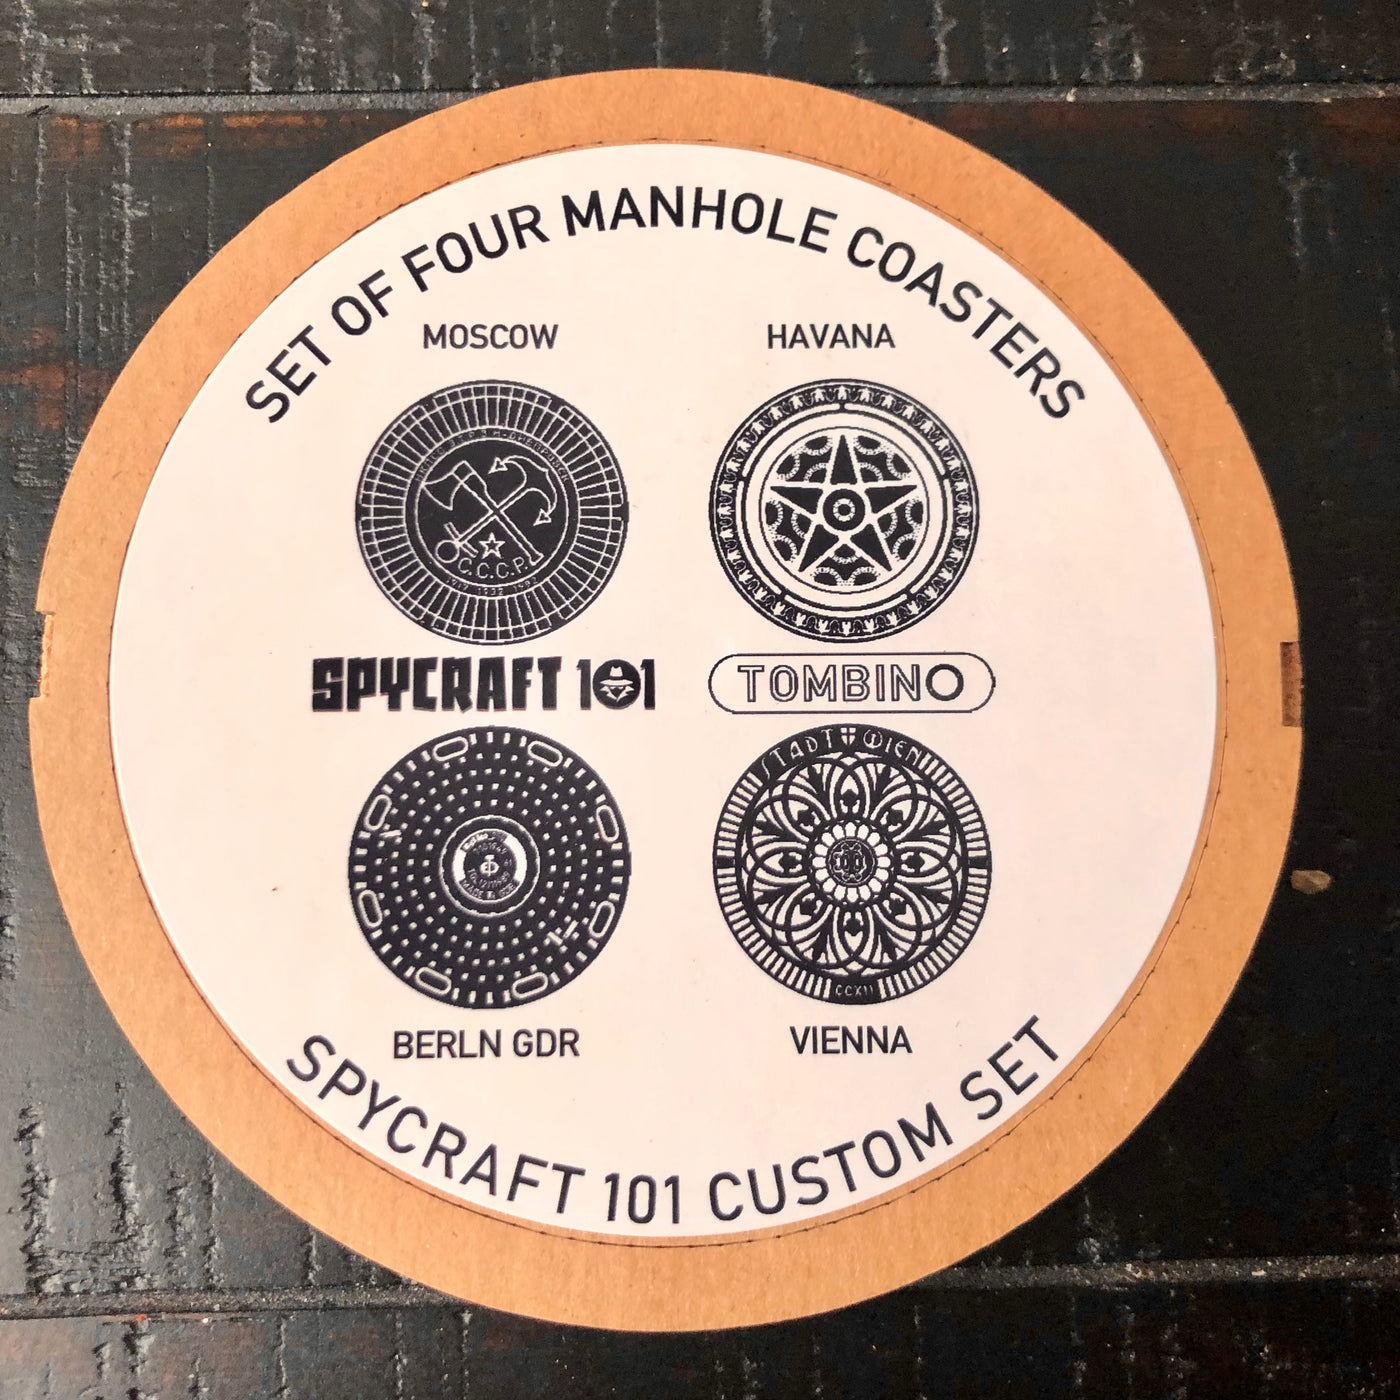 Spy Capitals Manhole Cover Coaster Set